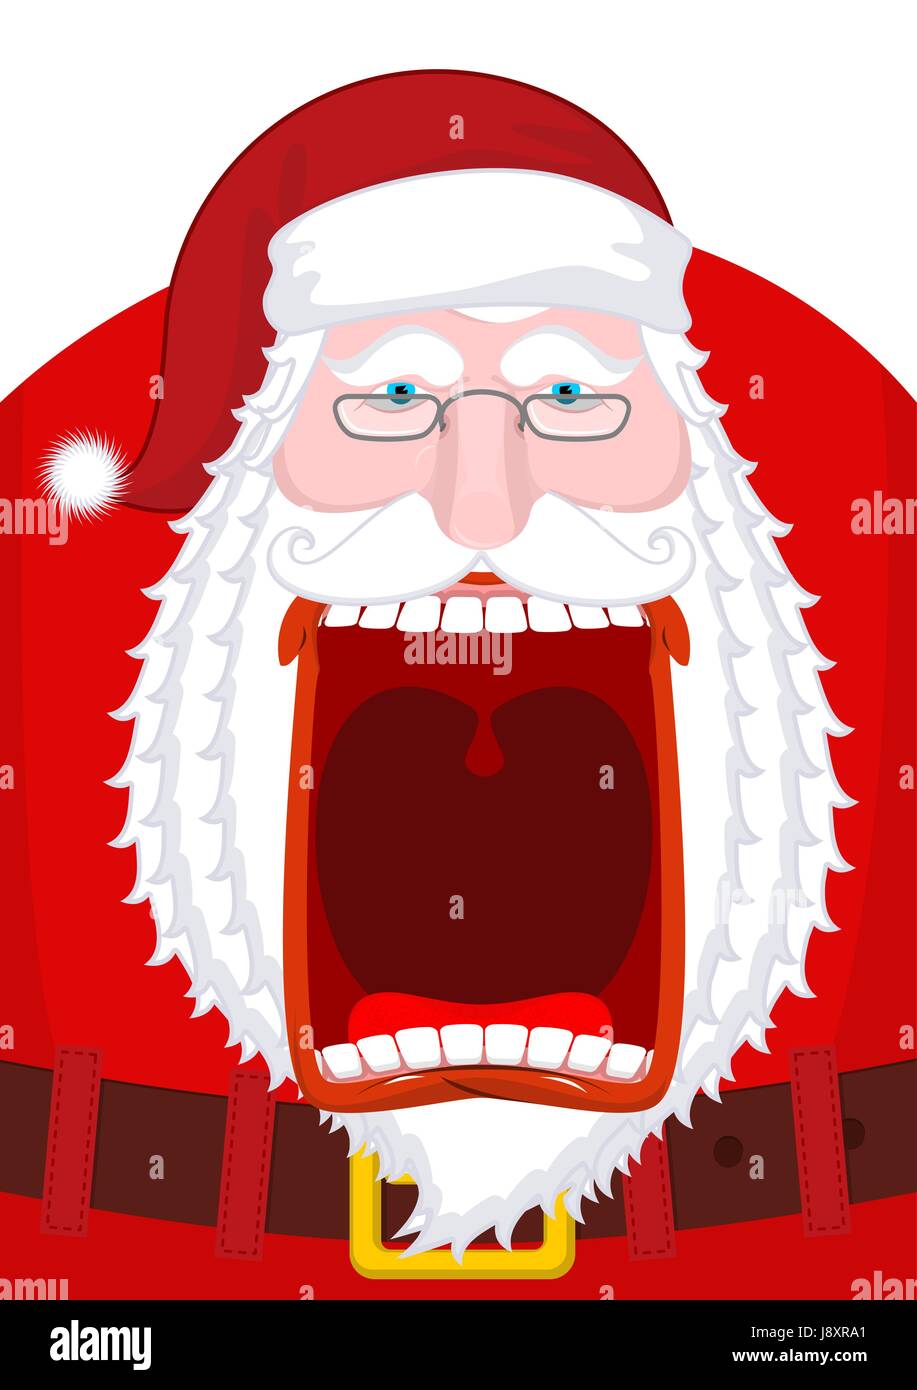 Böse Weihnachtsmann schreit. Beängstigend Großvater schreien. Verrückte  Santa Shout. Offenem Mund und Zähne. Rote Lippen. Xmas-Template-Design.  aggressive Greis Stock-Vektorgrafik - Alamy